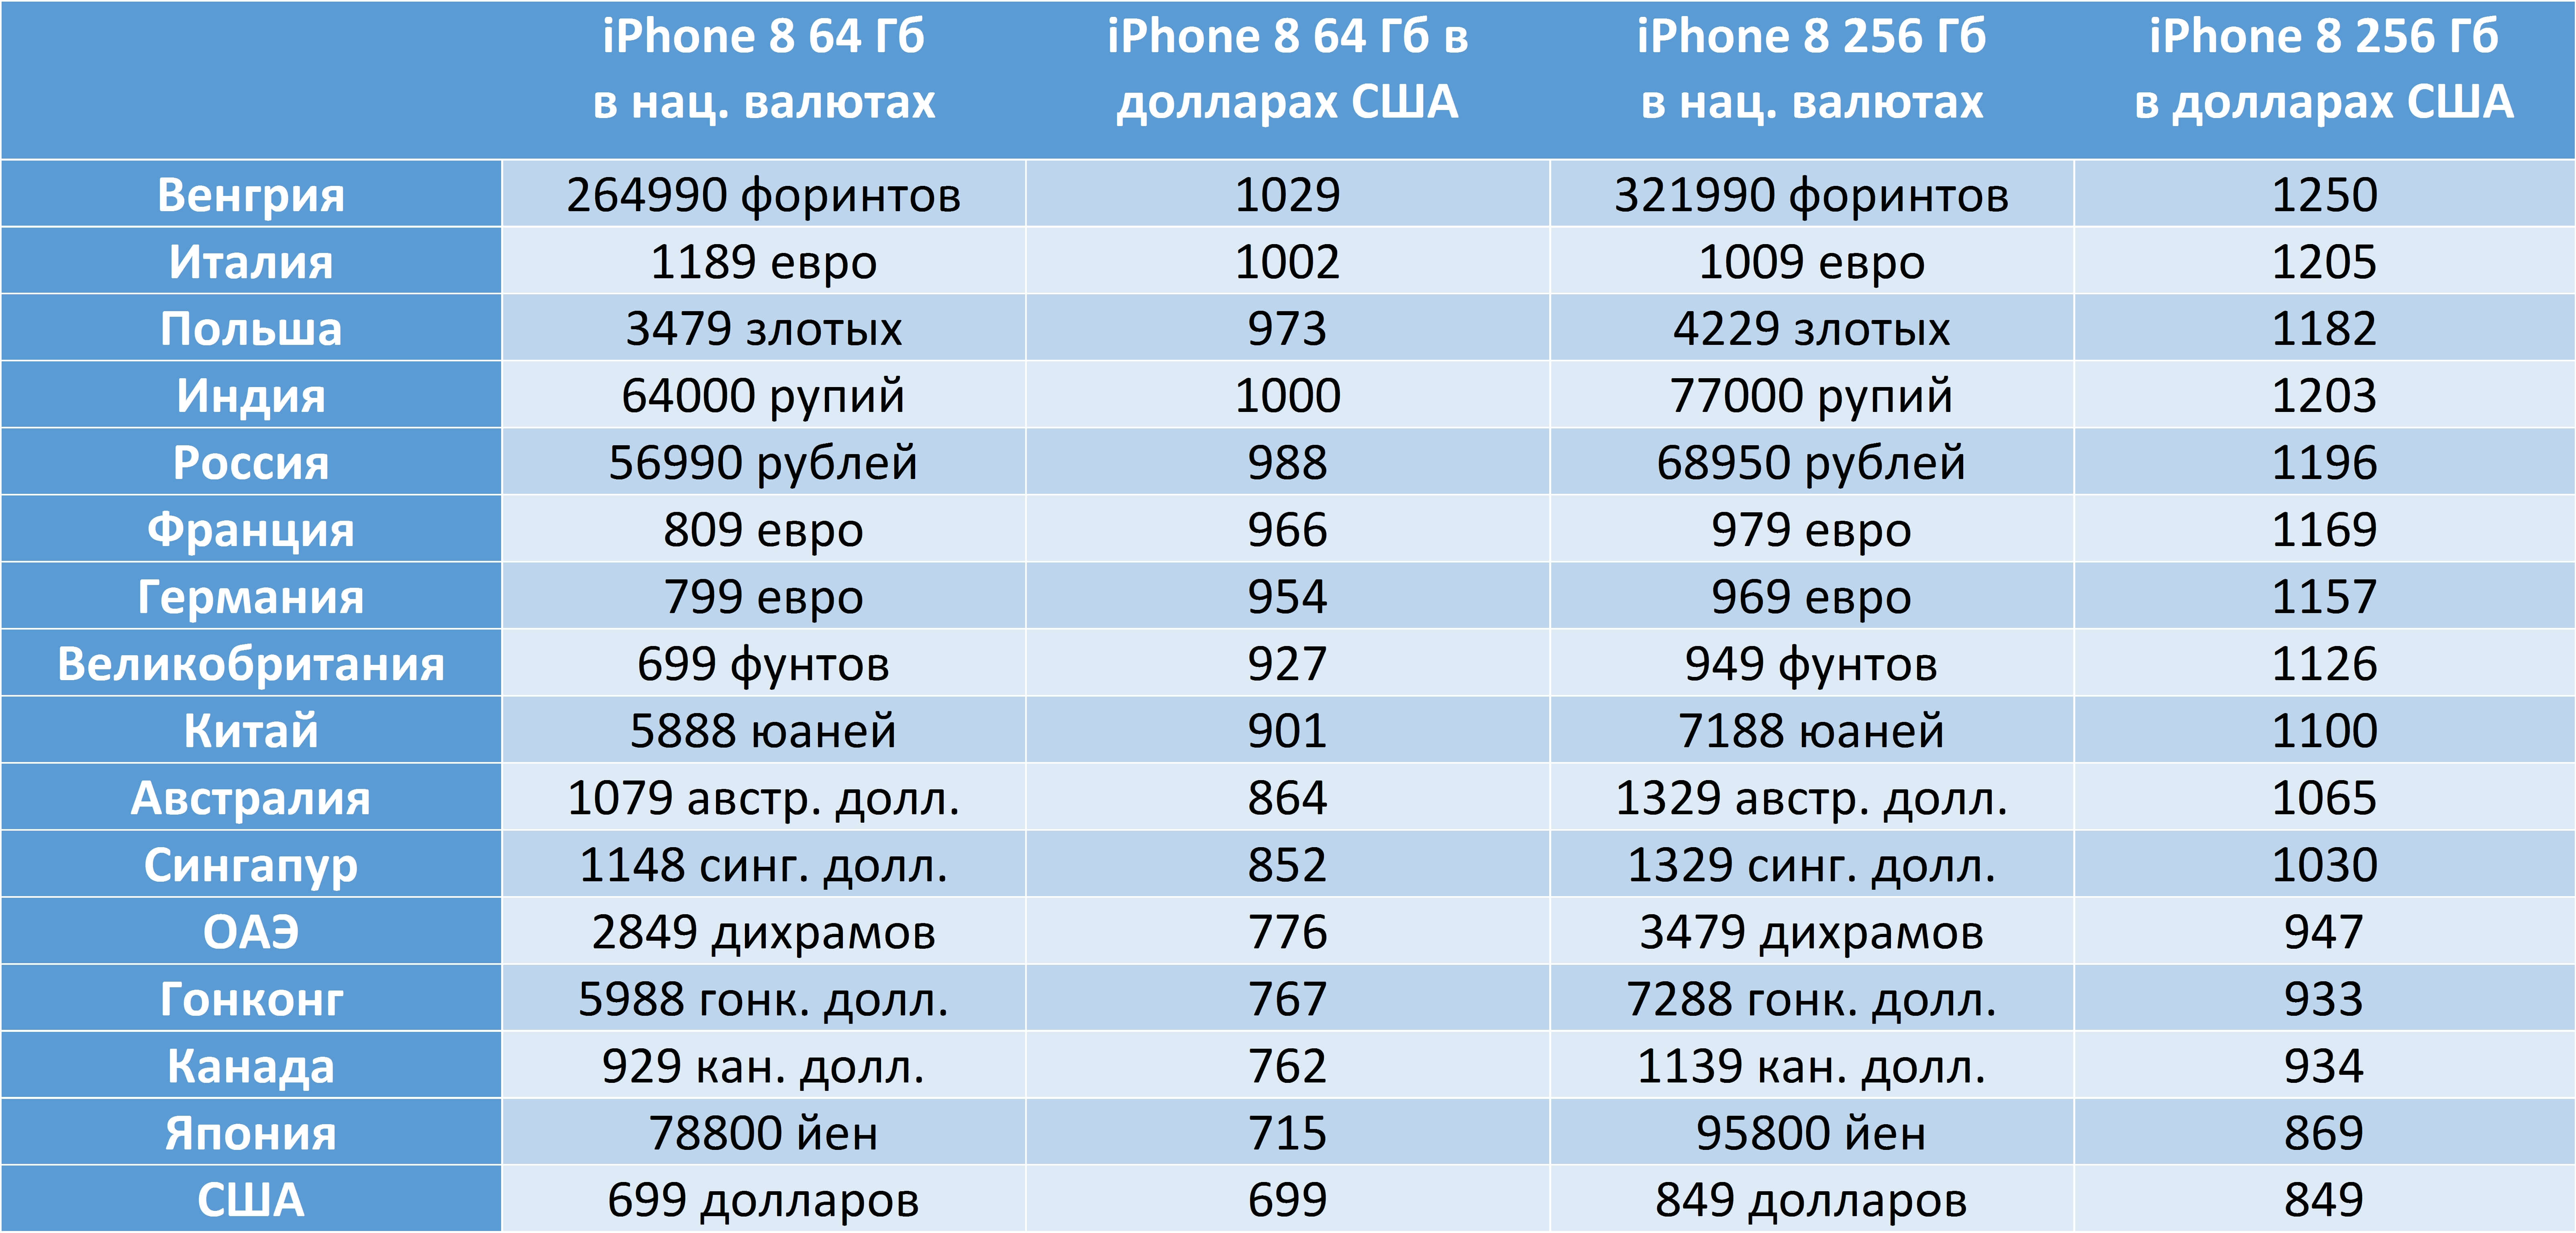 699 долларов в рублях. Количество проданных айфонов по странам. Количество айфонов в Америке. Самые дешевые айфоны по странам. В какой стране продаются самые дешевые айфоны.